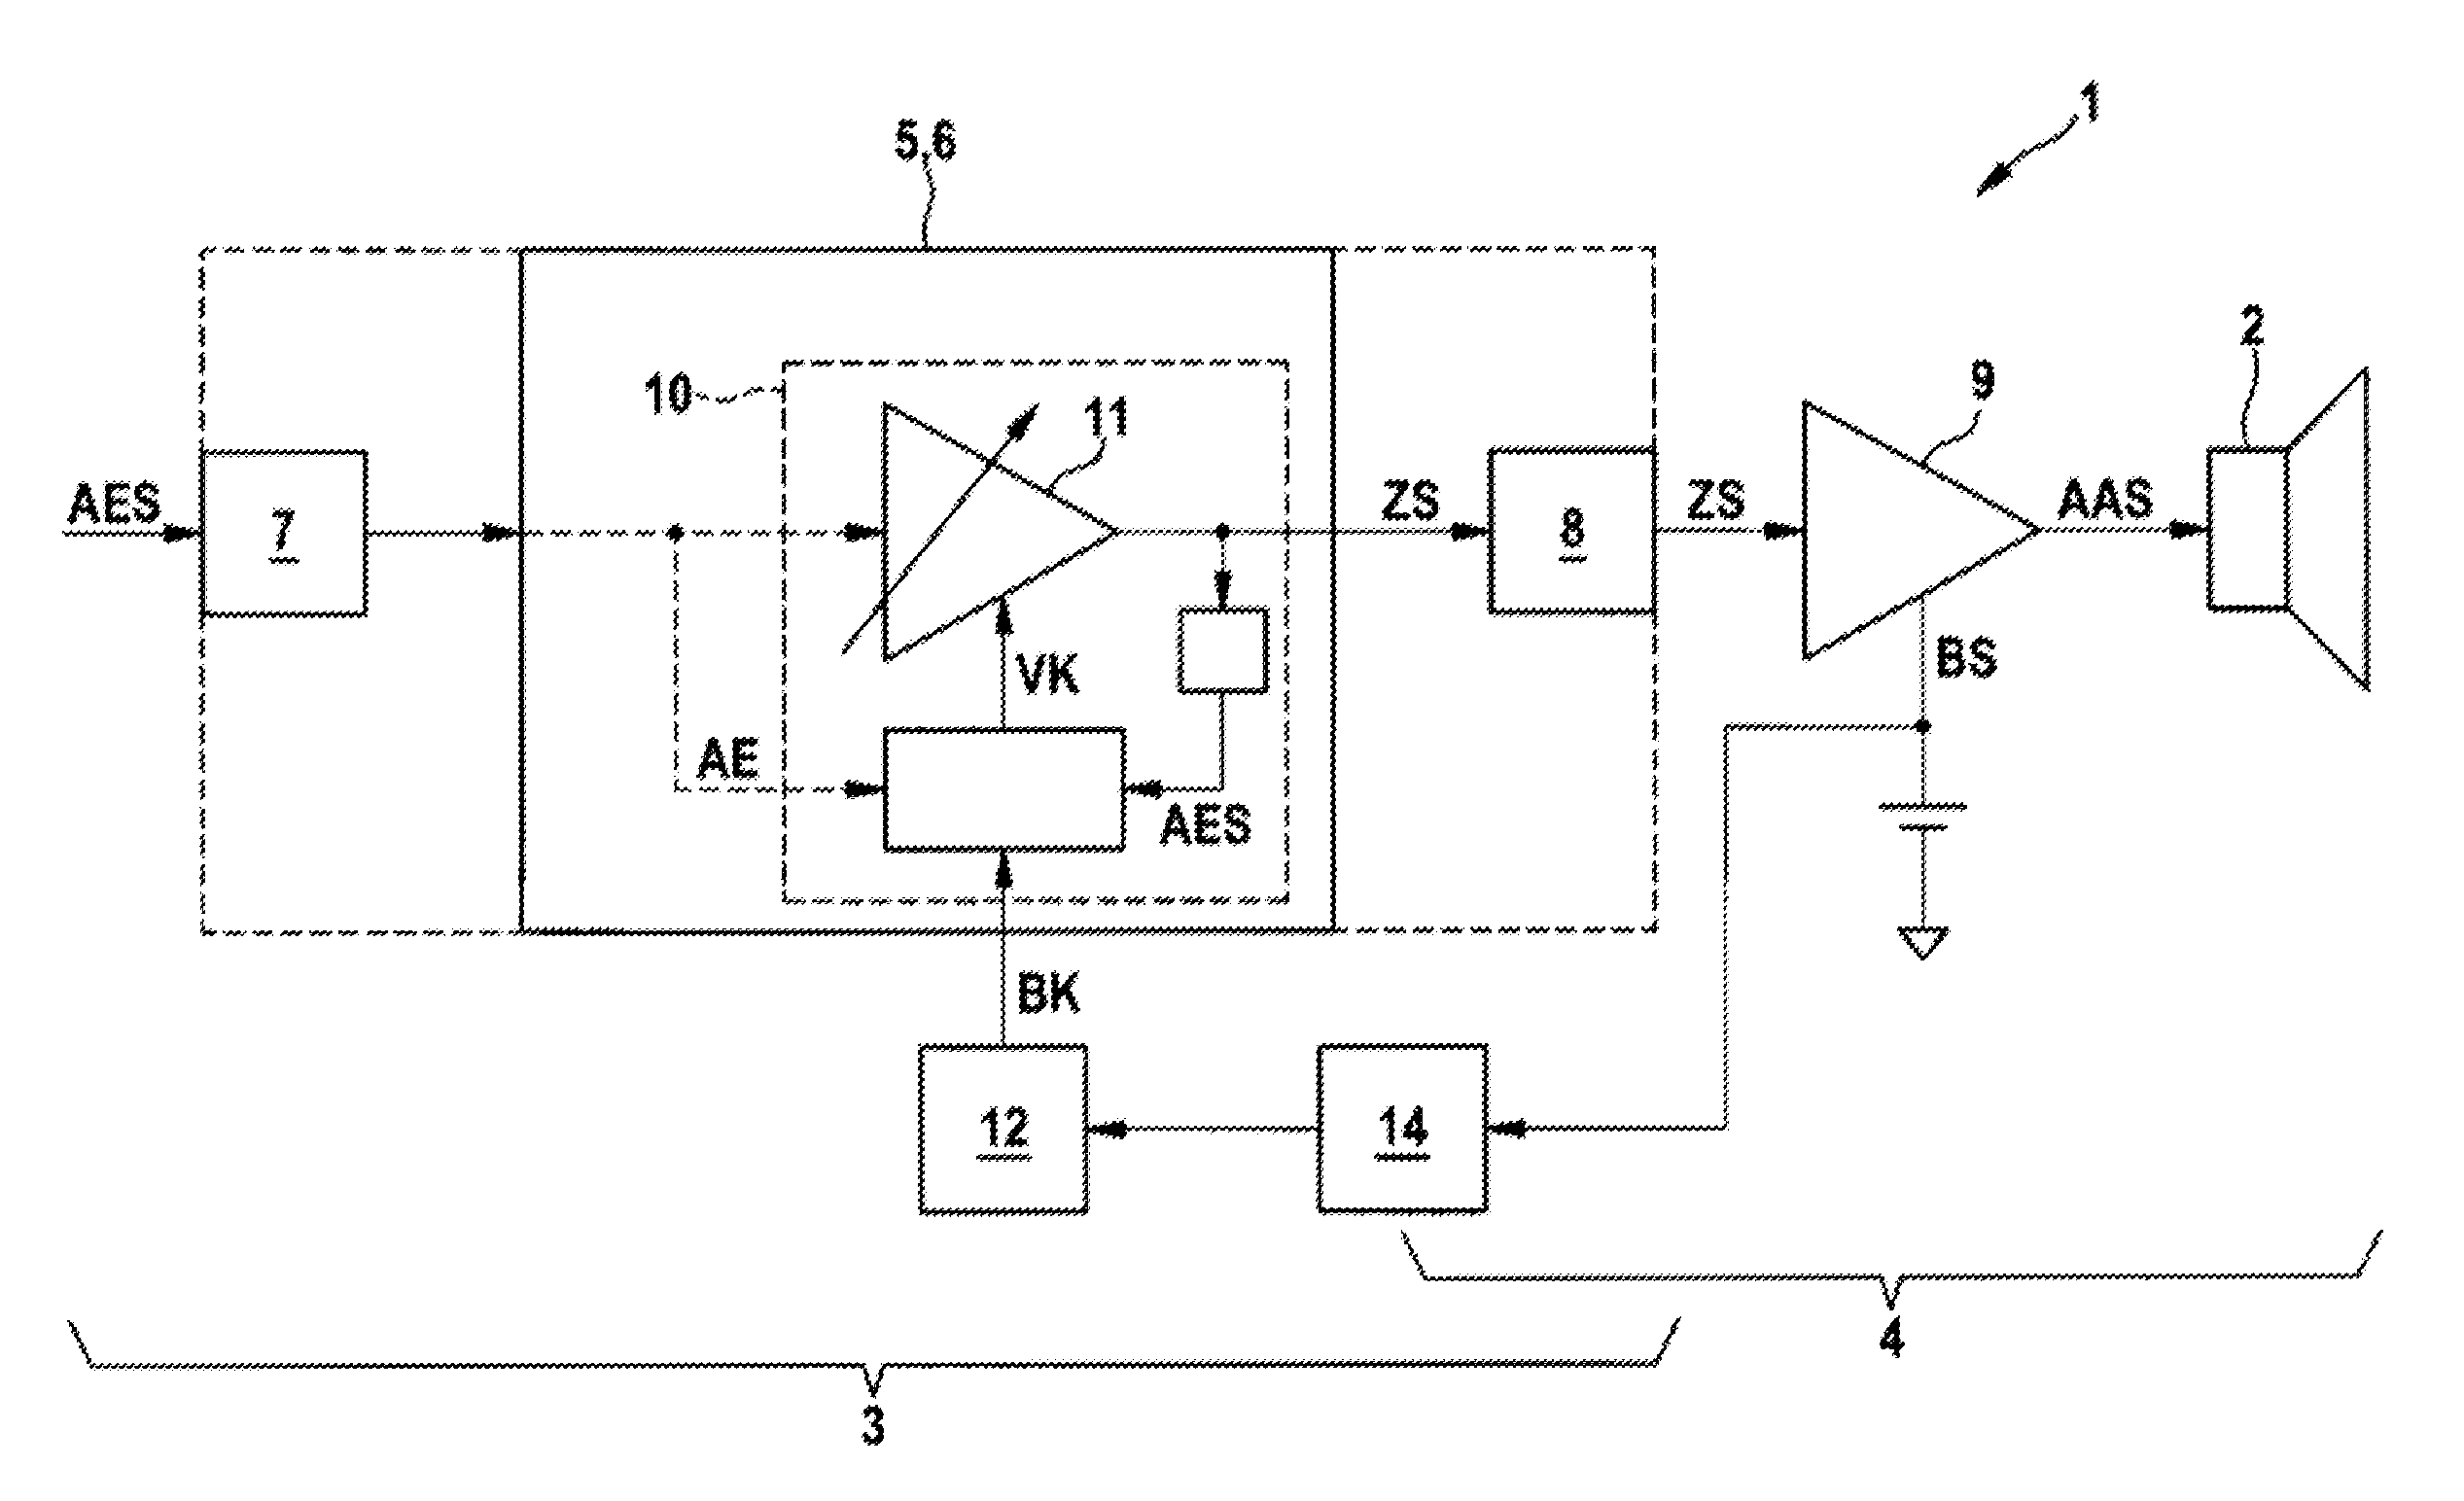 Amplifier arrangement with limiting module